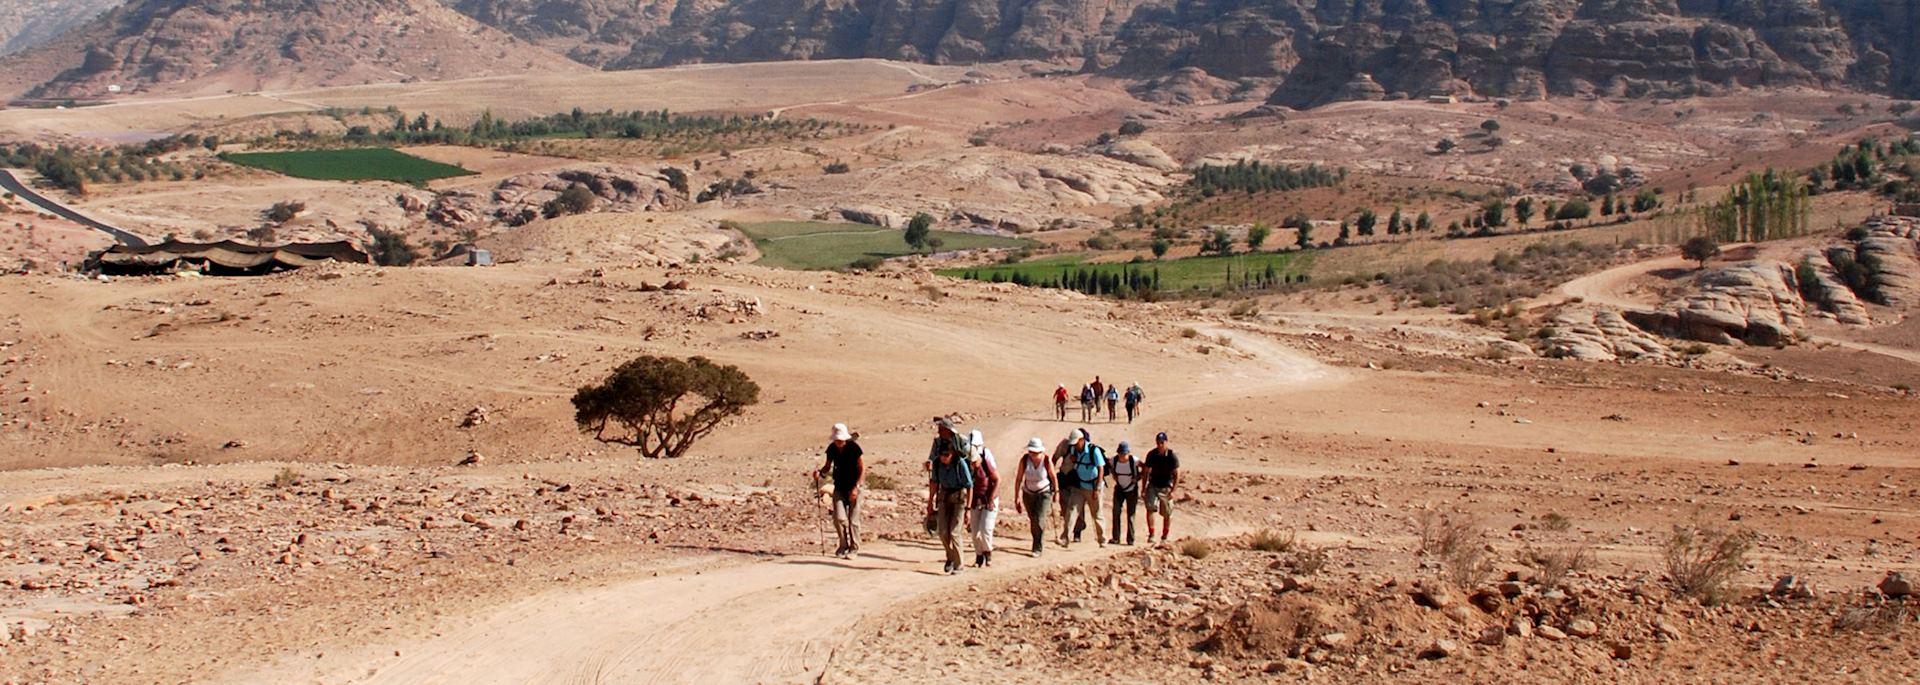 Walking toward Petra, Jordan